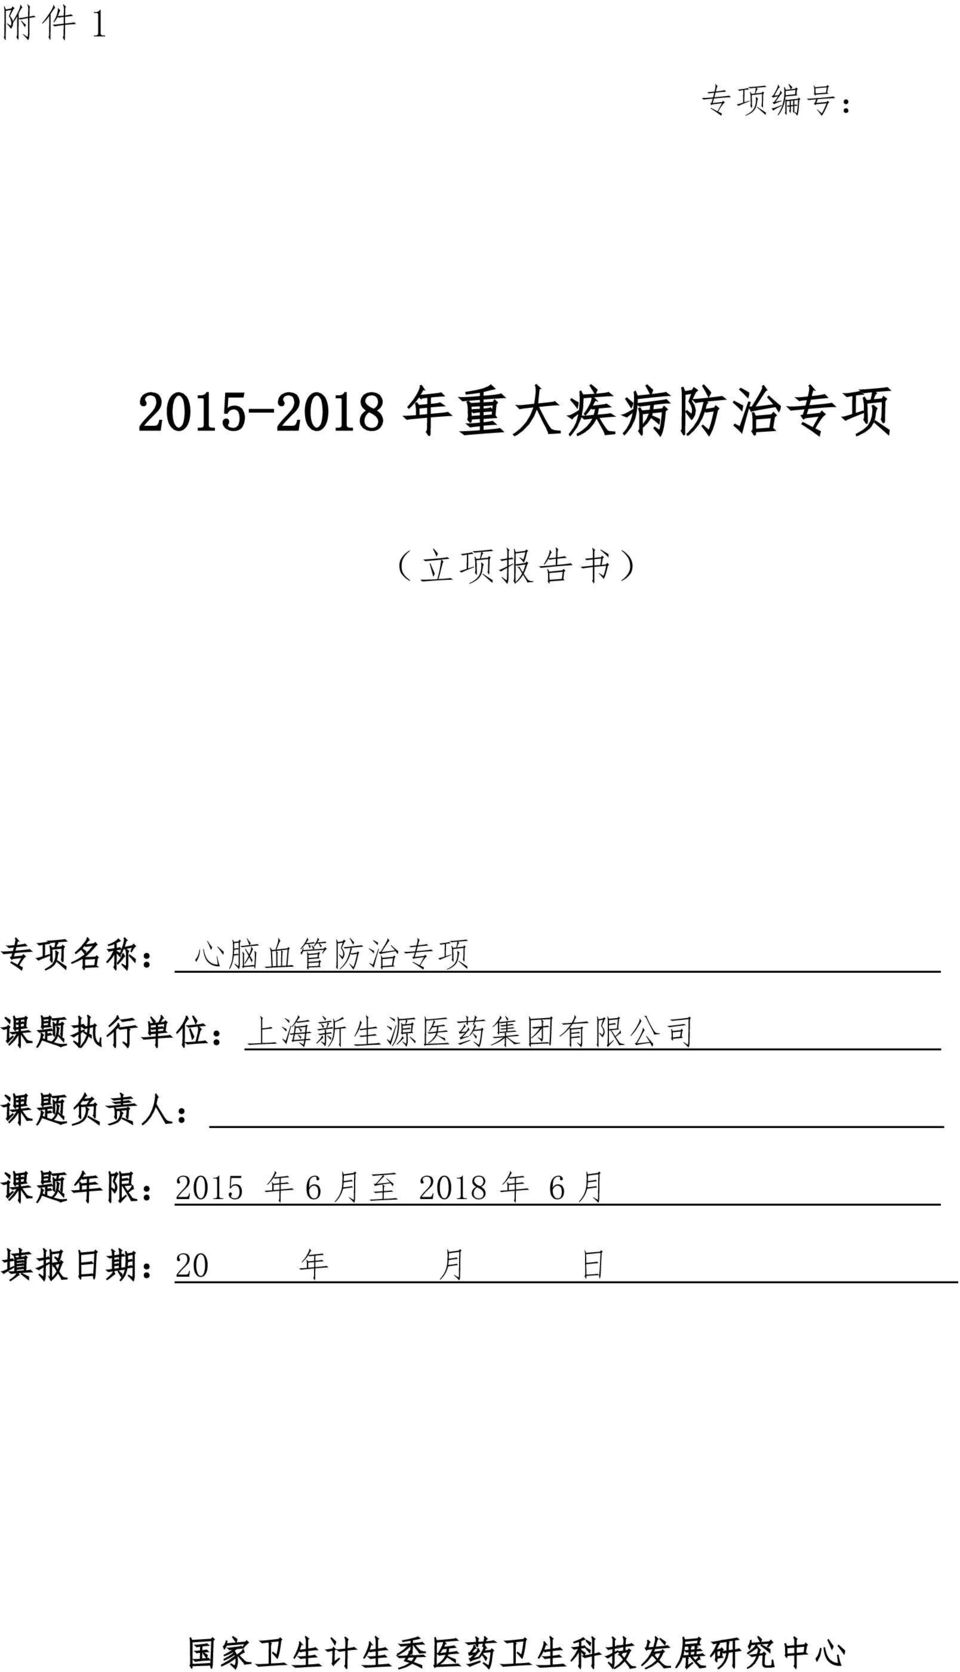 集 团 有 限 公 司 课 题 负 责 人 : 课 题 年 限 :2015 年 6 月 至 2018 年 6